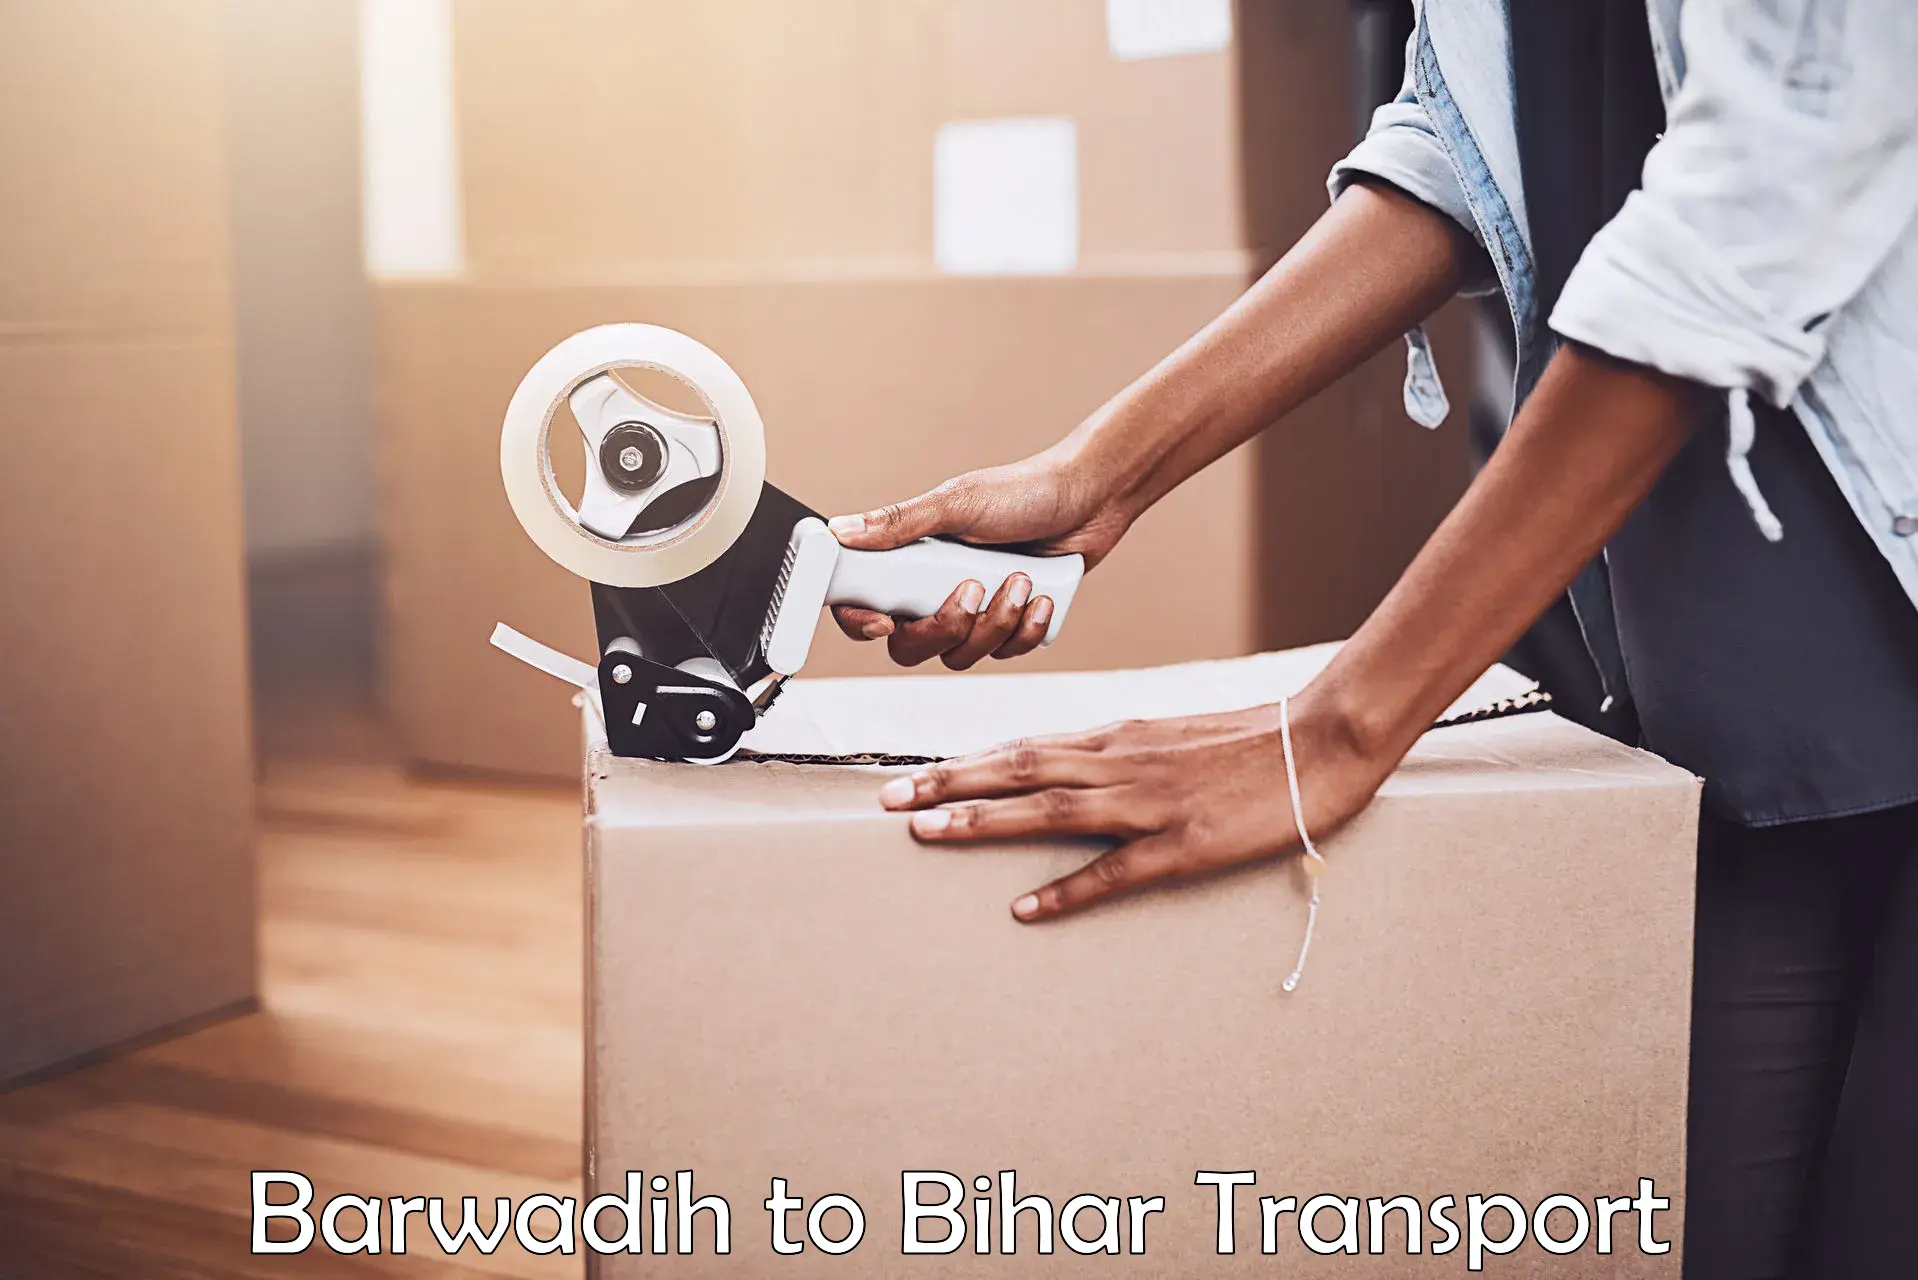 Furniture transport service Barwadih to Thakurganj